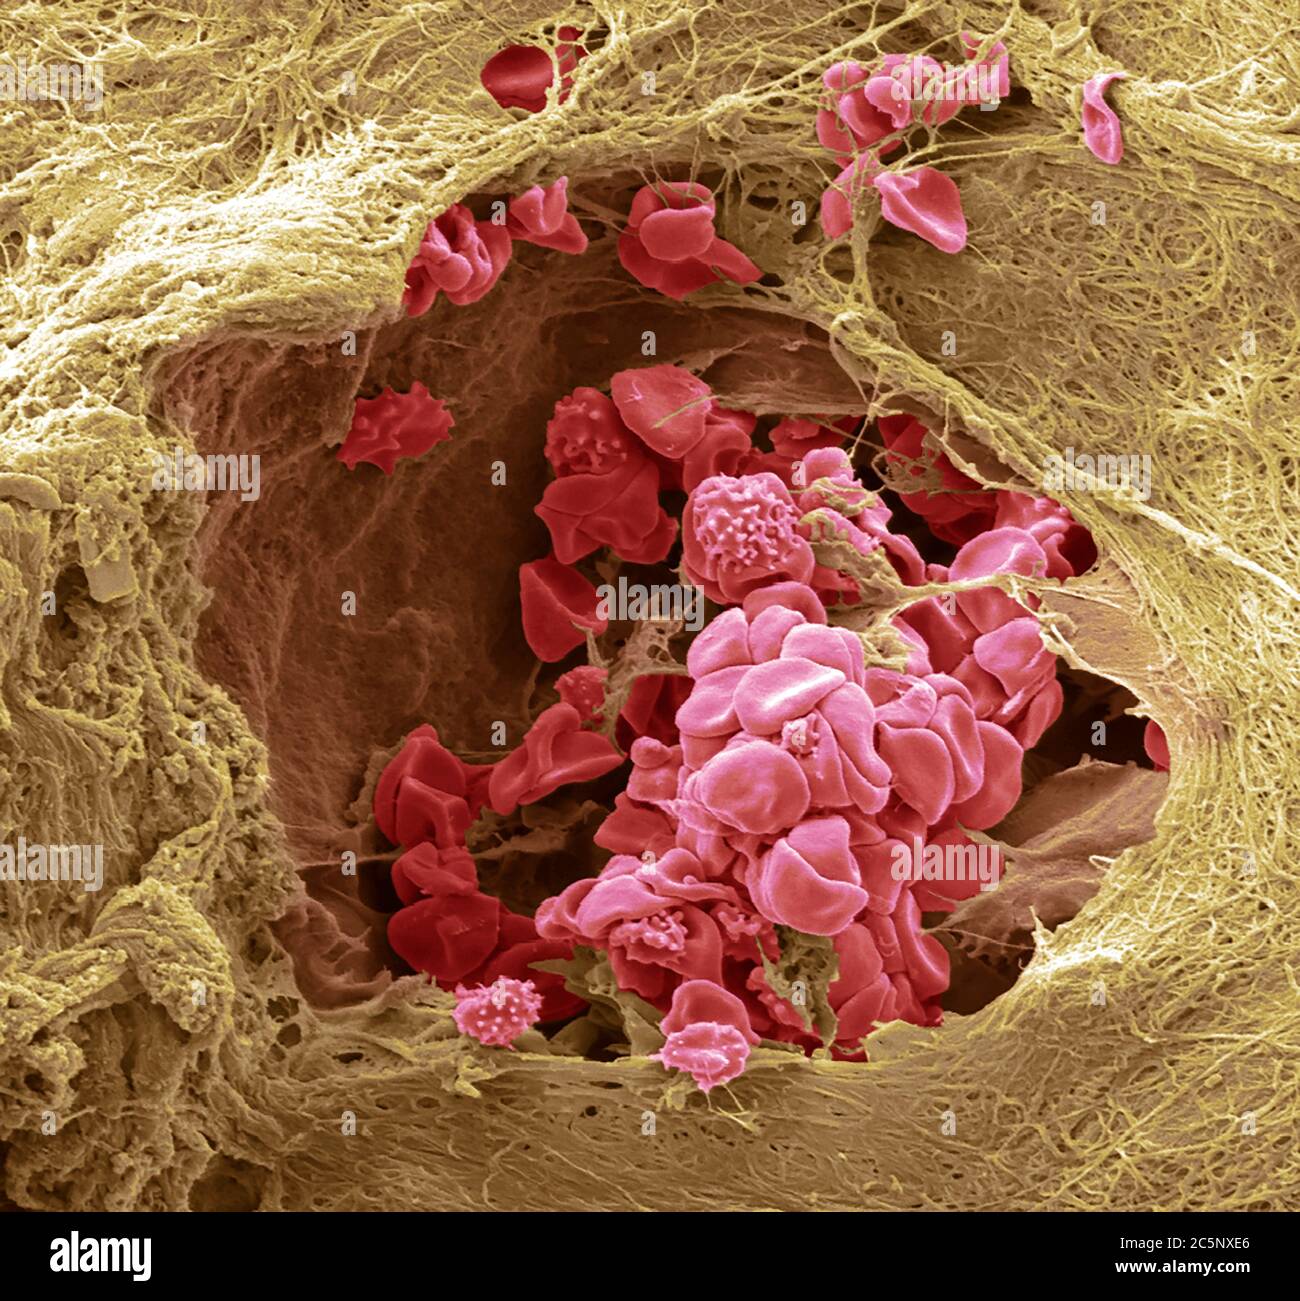 Blutgefäß der Haut. Farbiger Rasterelektronenmikrograph (SEM) eines Blutgefäßes (Arteriole) in der Dermis der Haut. Im Blutgefäß befinden sich rote Blutkörperchen (Erythrozyten, rot), die Sauerstoff um den Körper transportieren. Einige dieser roten Blutkörperchen sind zenkreniert. Das Blutgefäß ist von Bindegewebe umgeben, das der Haut ihren Ton und ihre Elastizität verleiht. Vergrößerung: 1000 bei 10 Zentimeter Breite. Stockfoto